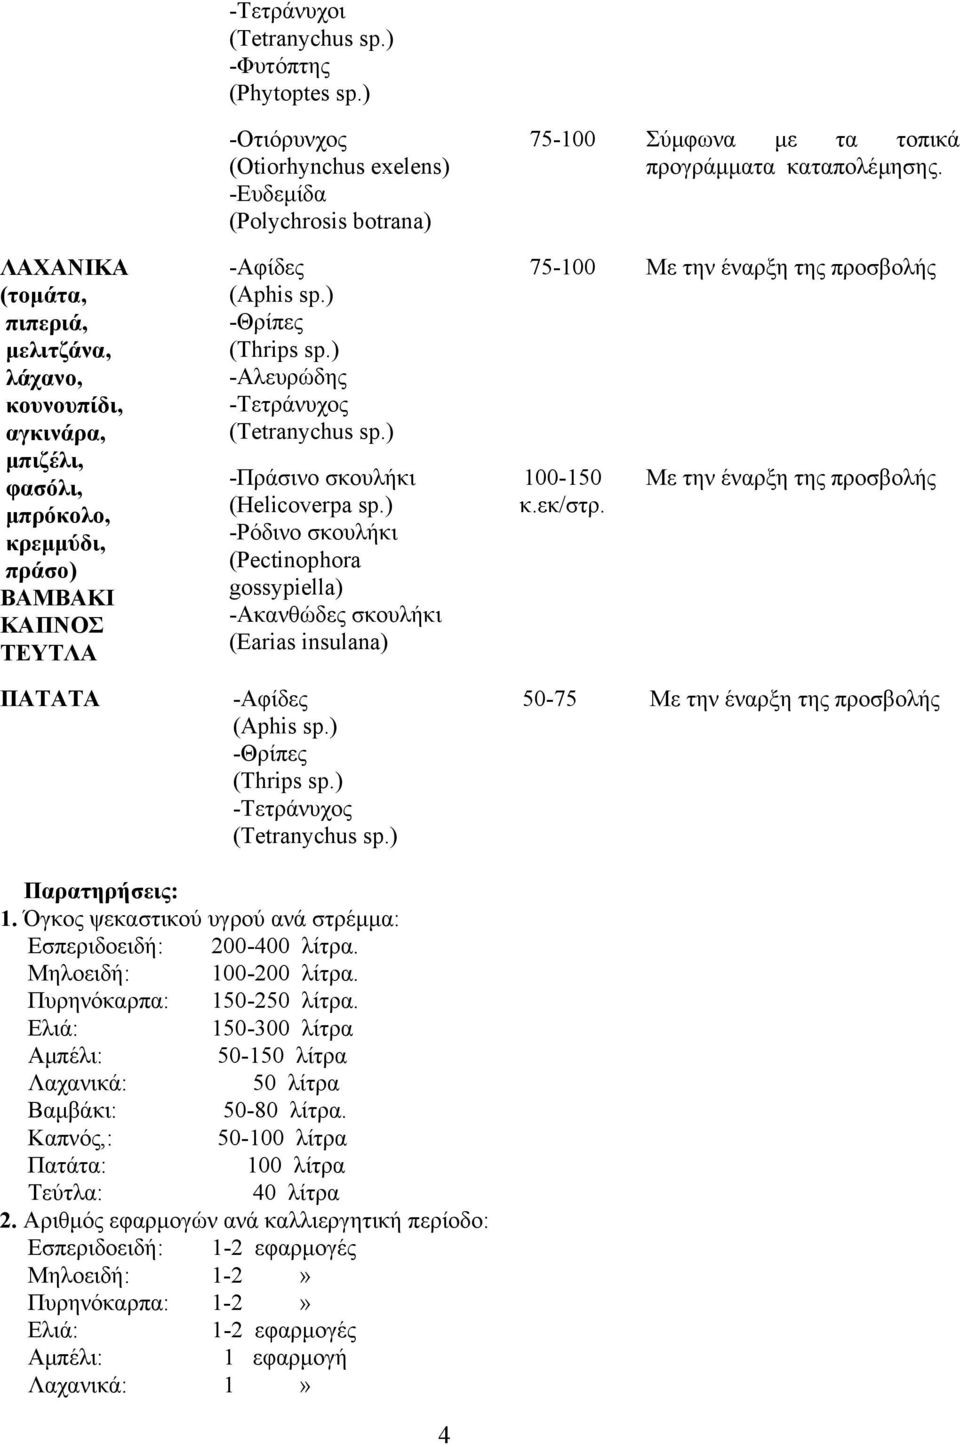 ) -Αλευρώδης -Τετράνυχος -Πράσινο σκουλήκι (Helicoverpa sp.) -Ρόδινο σκουλήκι (Pectinophora gossypiella) -Ακανθώδες σκουλήκι (Earias insulana) 75-100 100-150 κ.εκ/στρ.